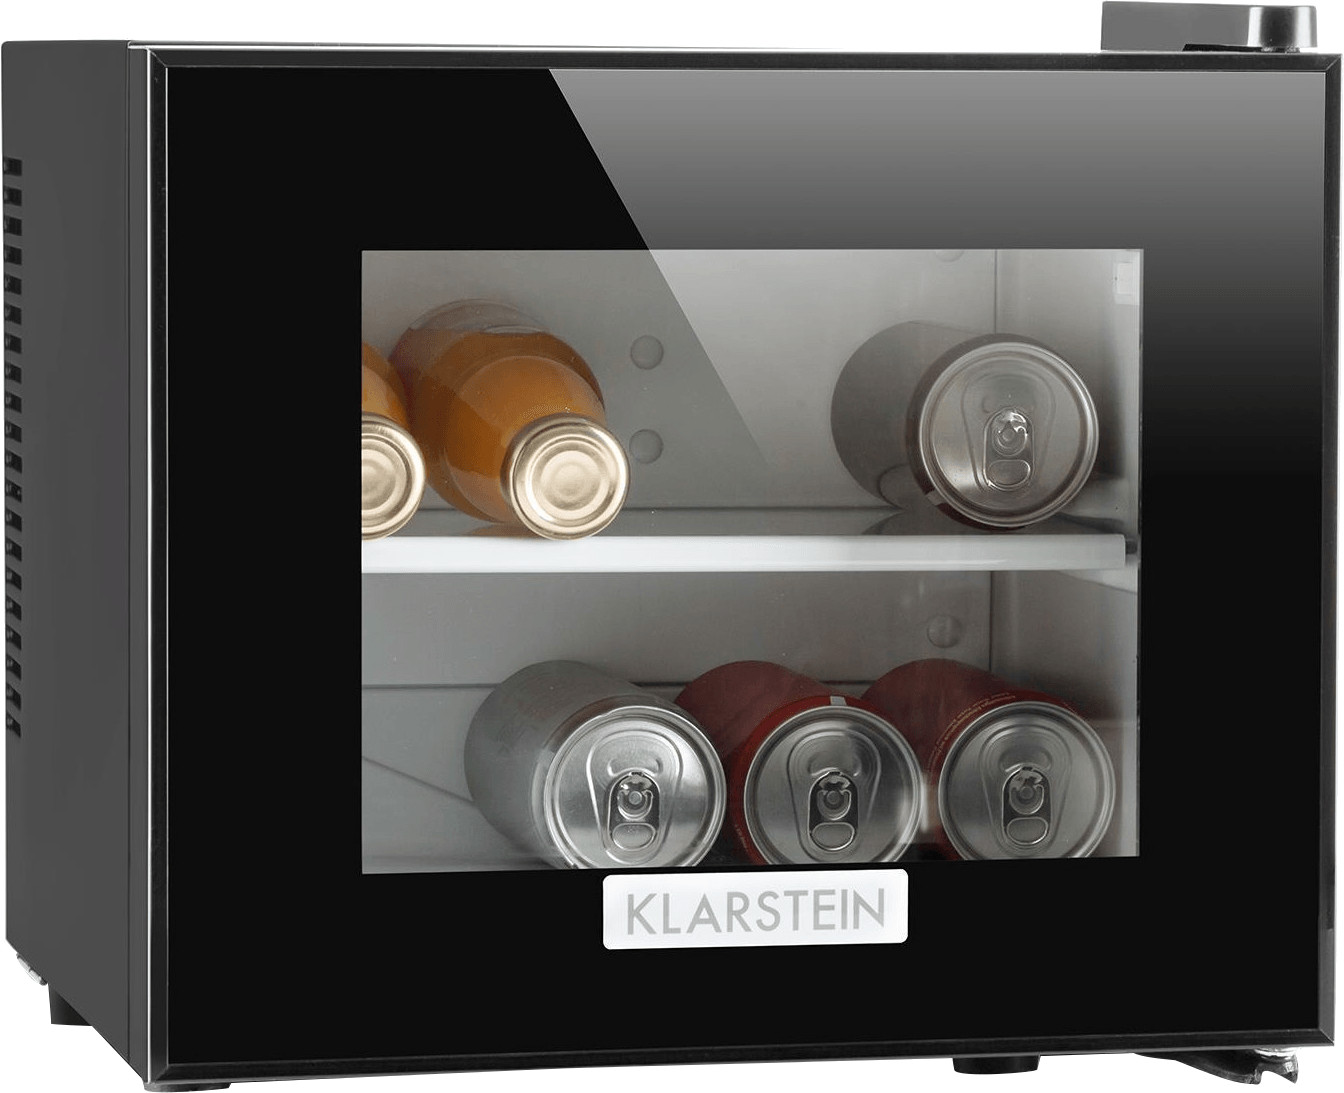 Frosty Minibar Mini-Kühlschrank, freistehend, Thermoelektrisches  Kühlsystem, 10 Liter Fassungsvermögen, Kühlung: 12 - 18 °C, Energieeffizienzklasse A, 33 dB, Innenraum: weiß, LED-Licht